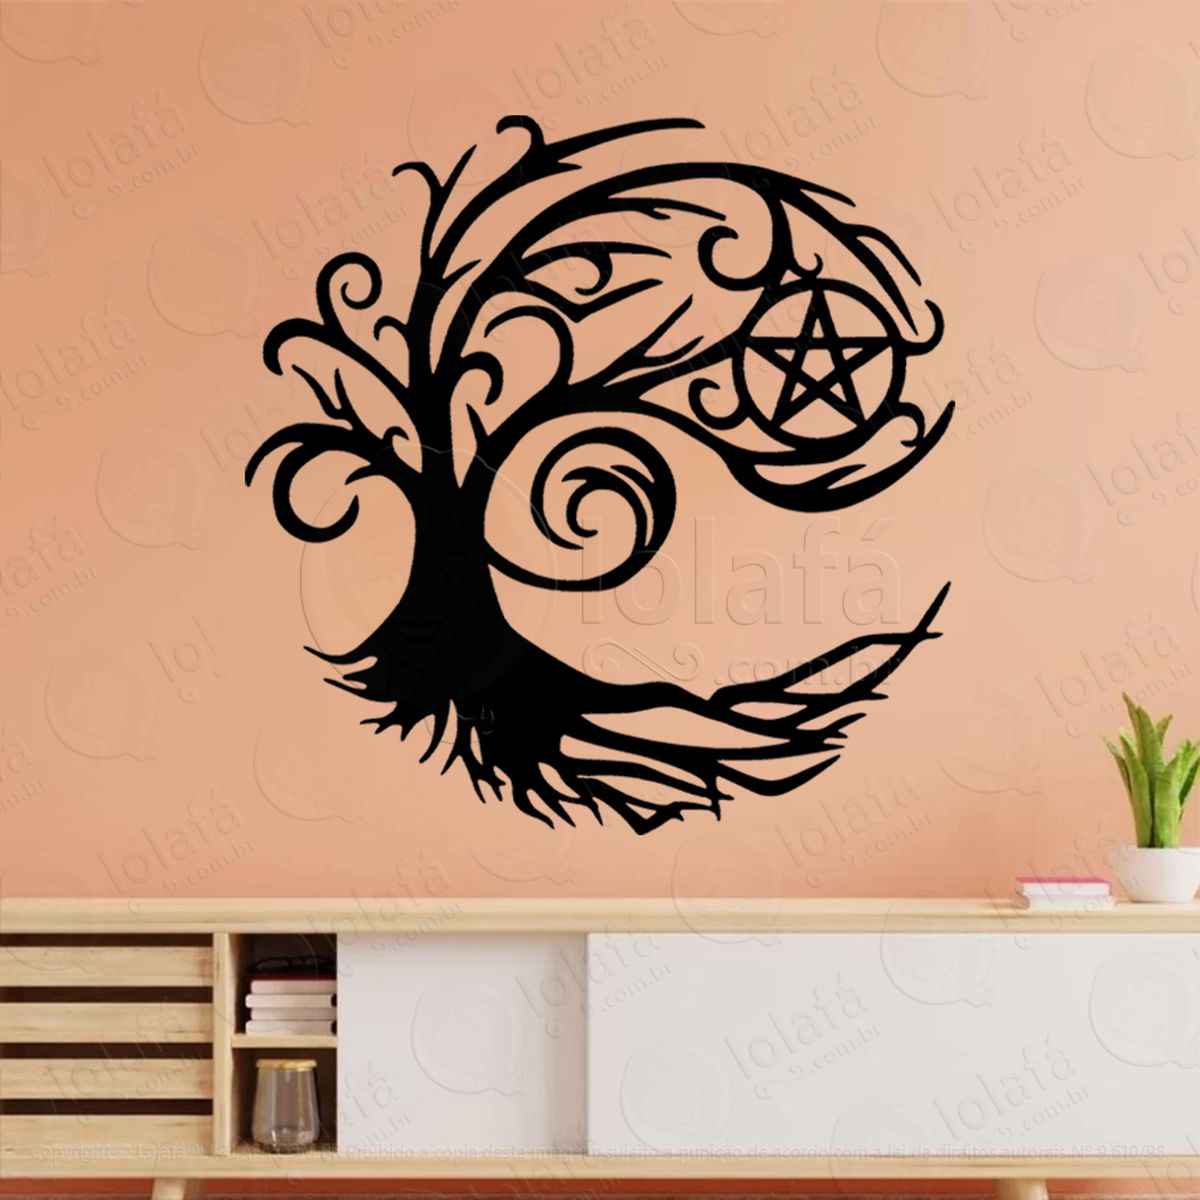 Árvore do pentáculo pentacle tree adesivo de parede decorativo para casa, sala, quarto, vidro e altar ocultista - mod:269